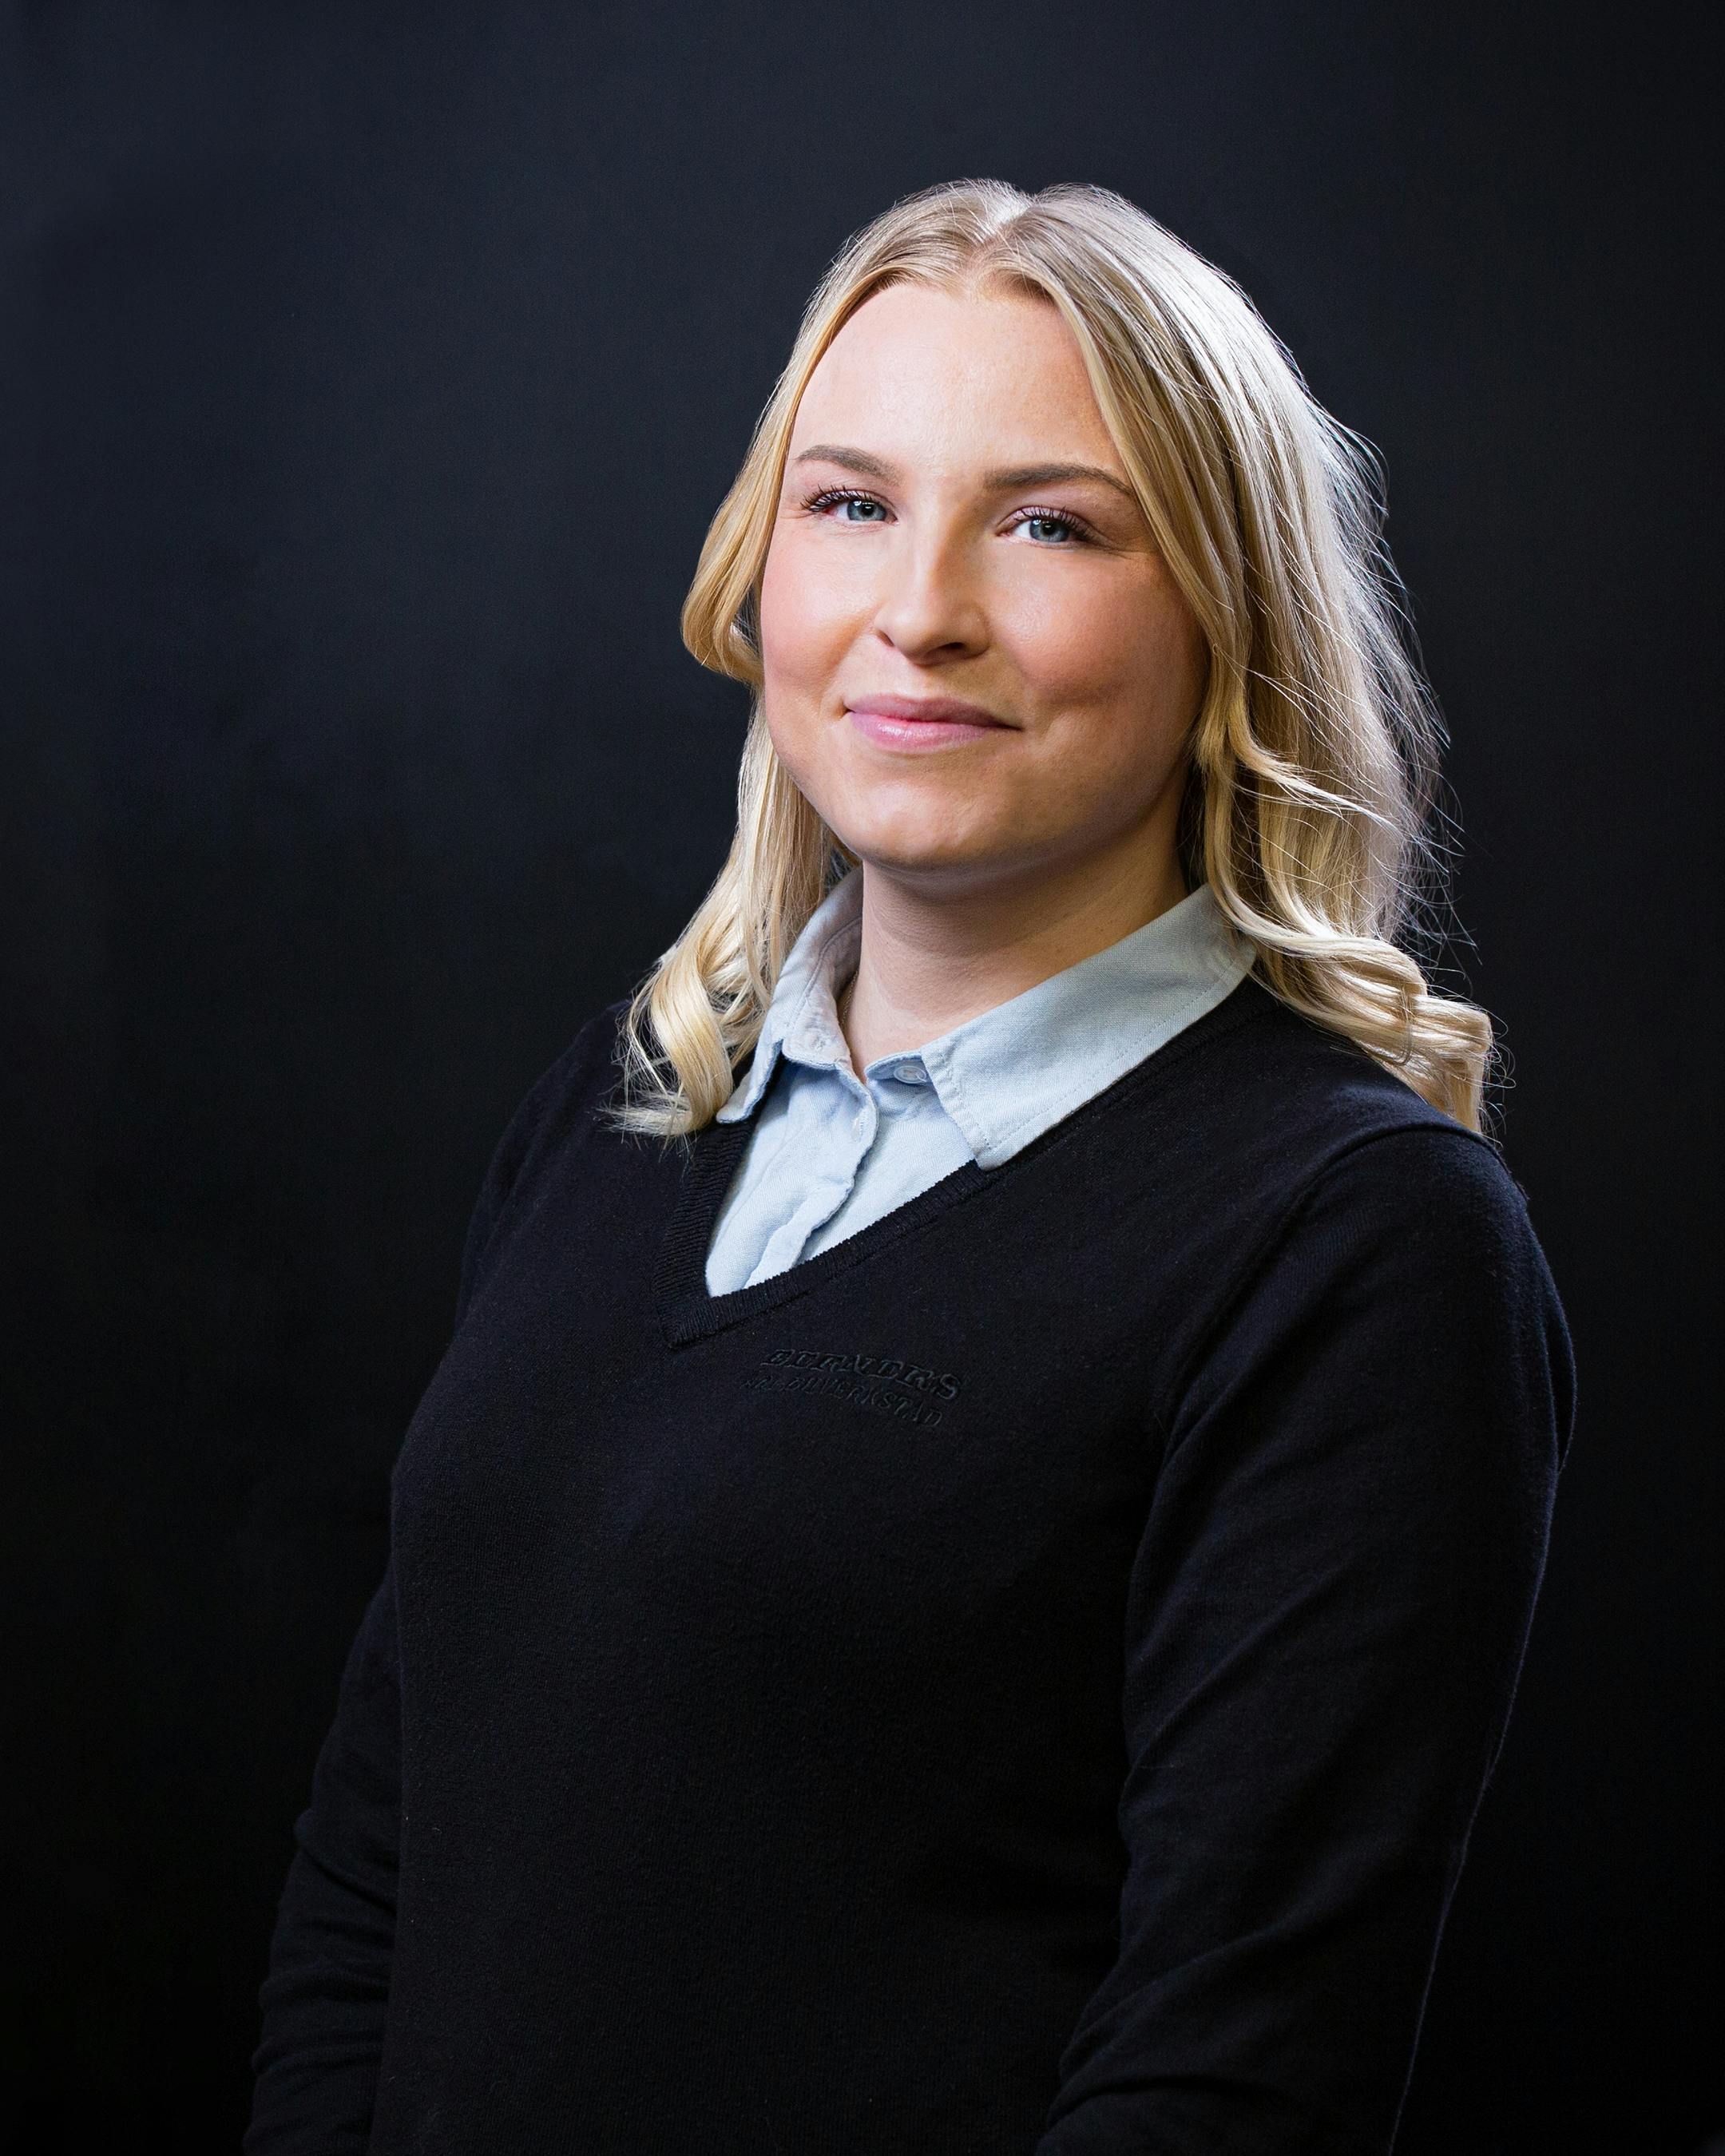 Elina Eriksson